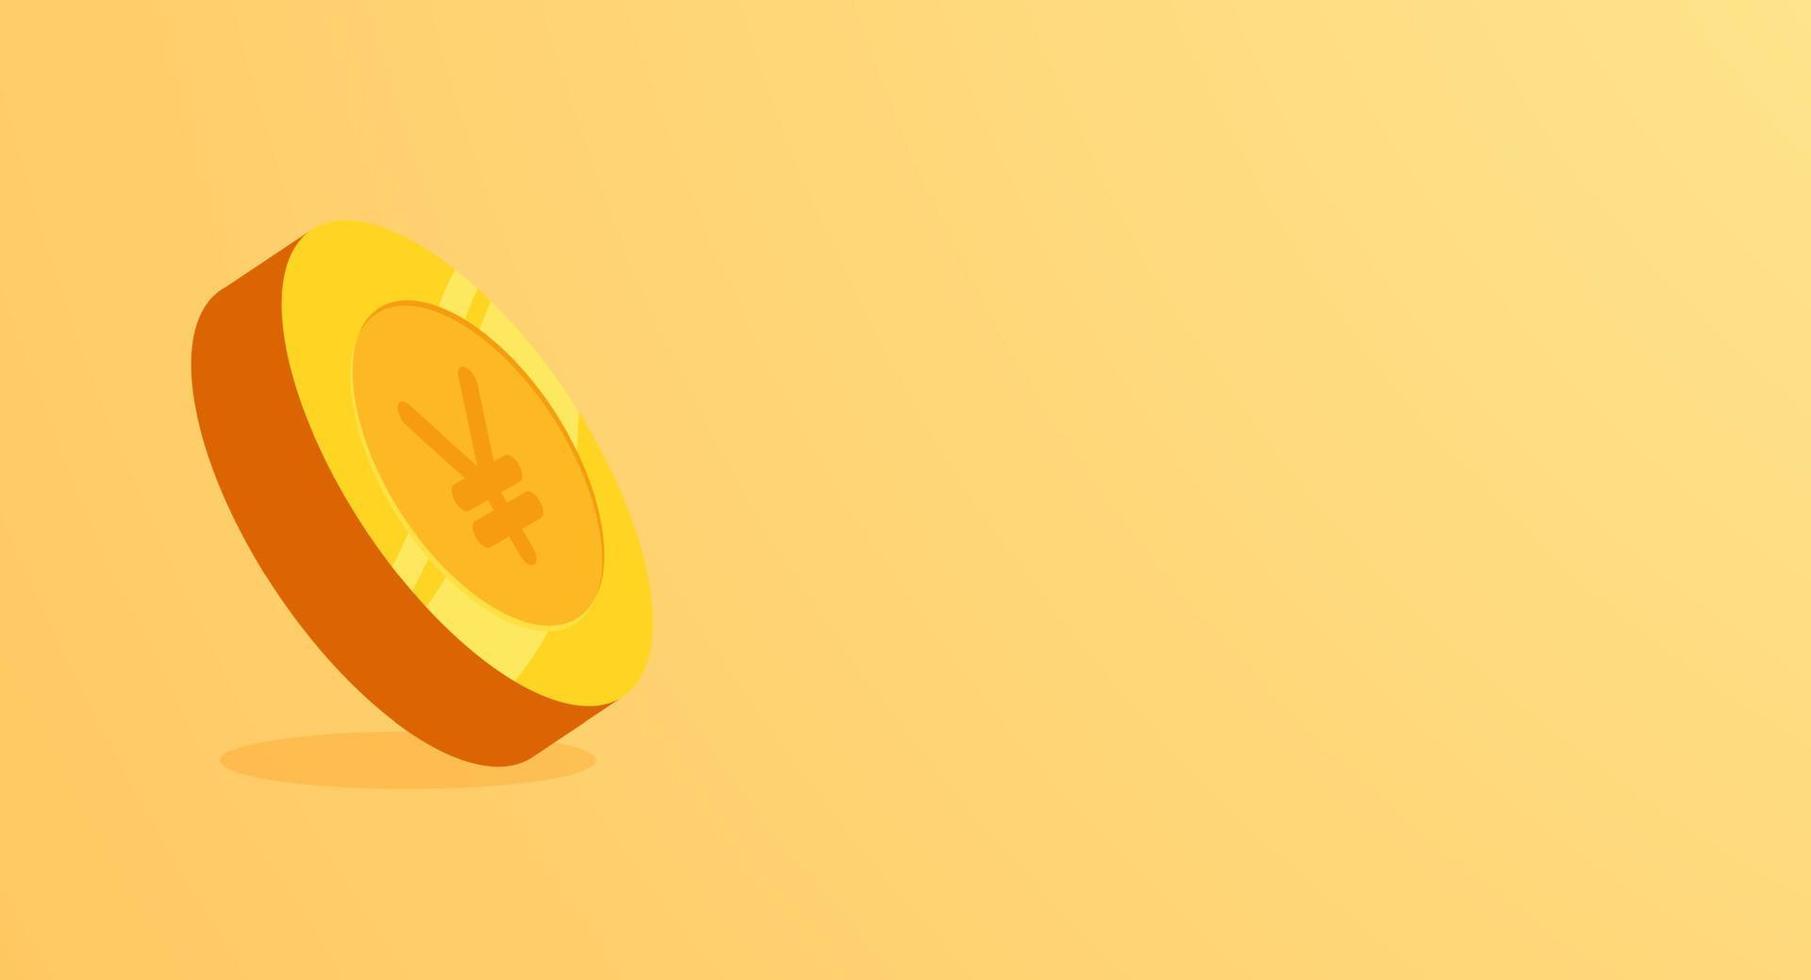 bandeira de ienes dourados isolada em fundo amarelo. ilustração em vetor moeda 3D.